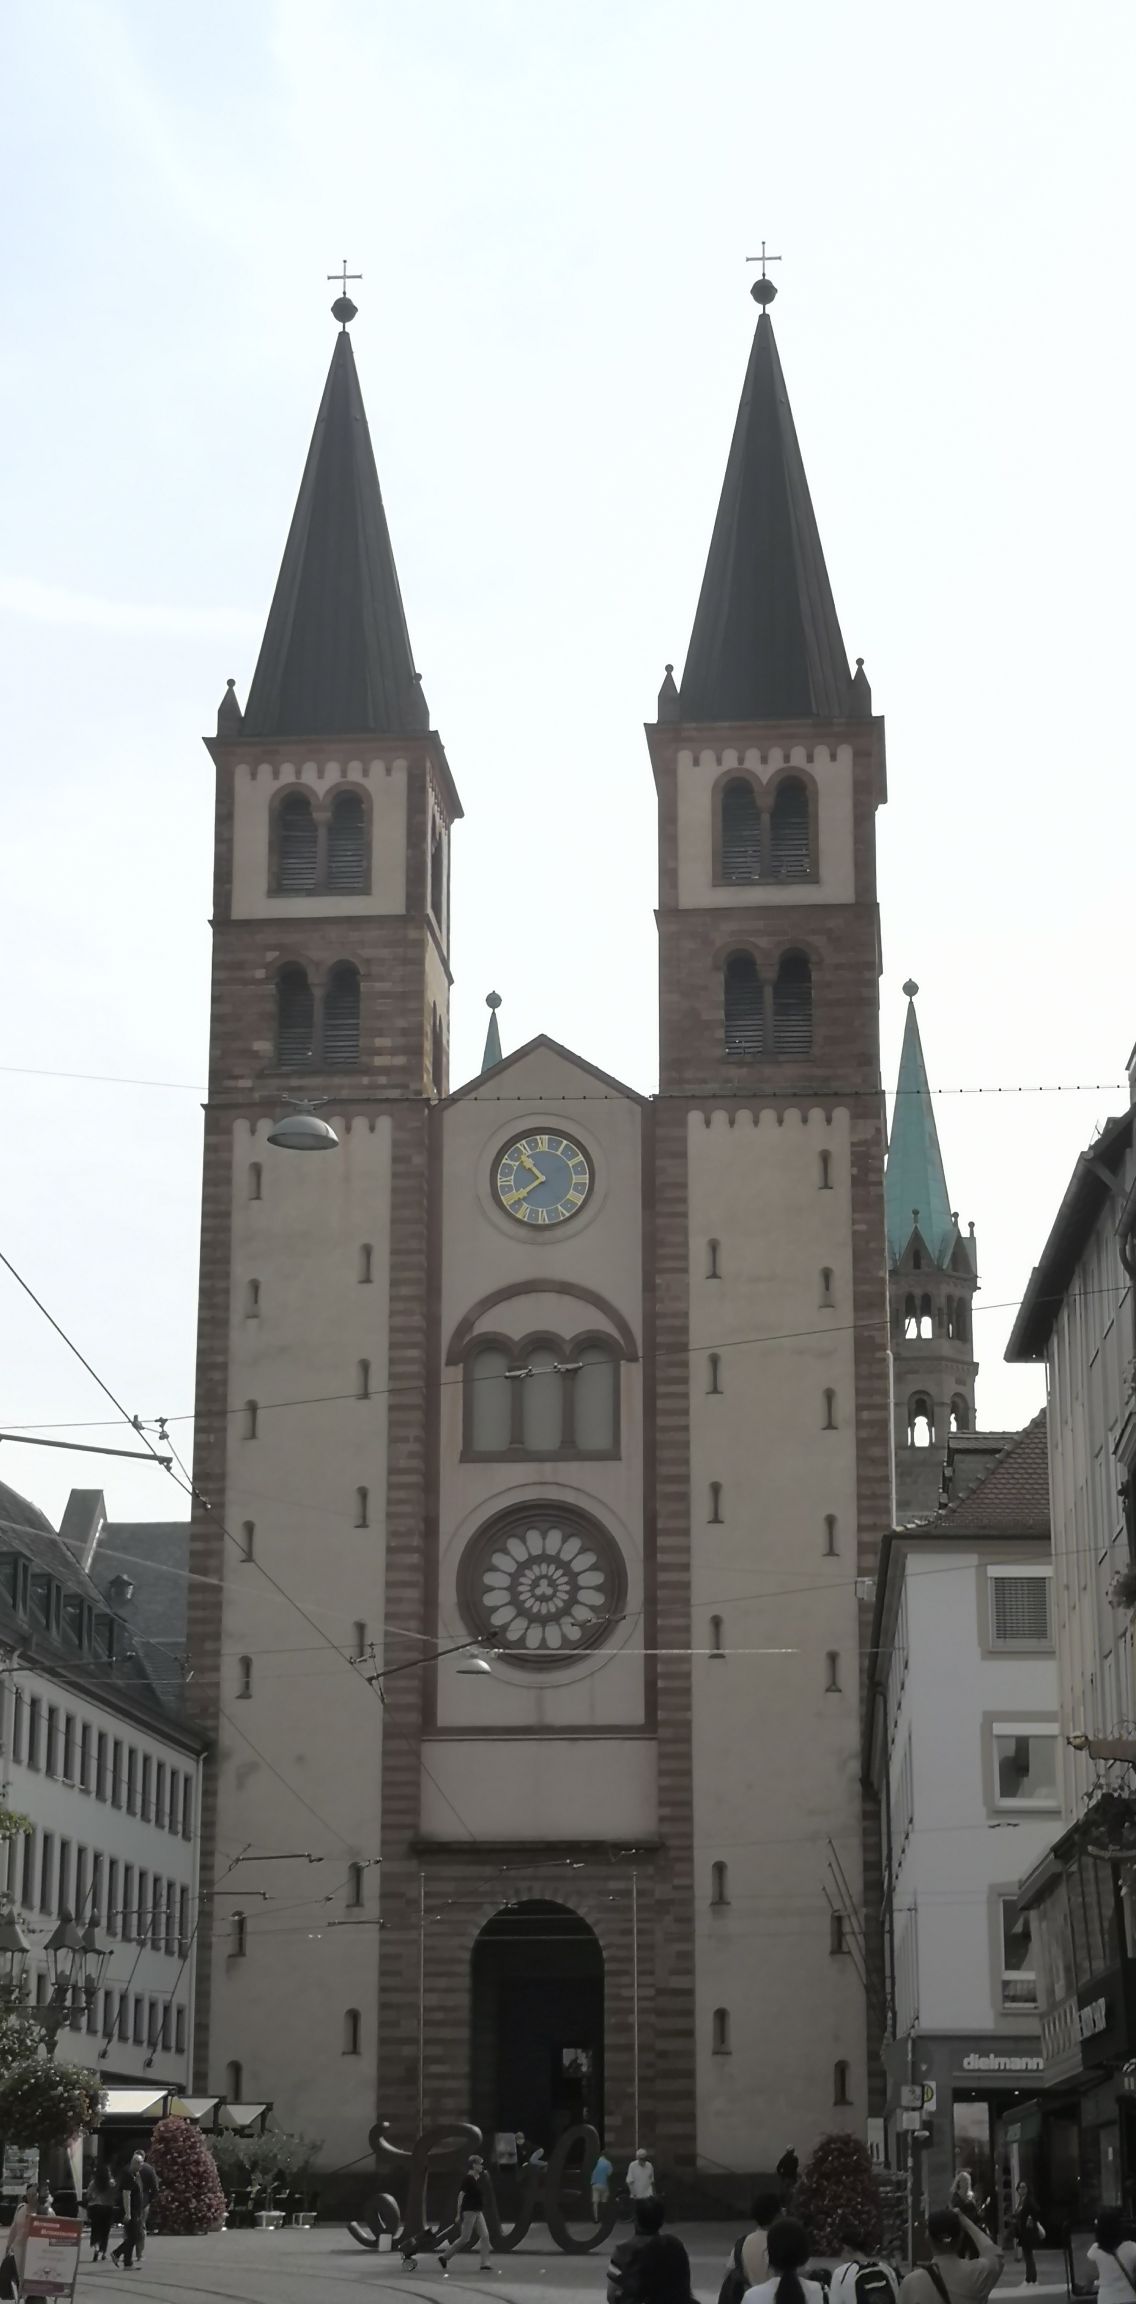 维尔斯堡有很多教堂⛪️，圣基利安主教堂位于古城的中心区域，正对美茵河老桥。罗曼式建筑的教堂，是维尔茨